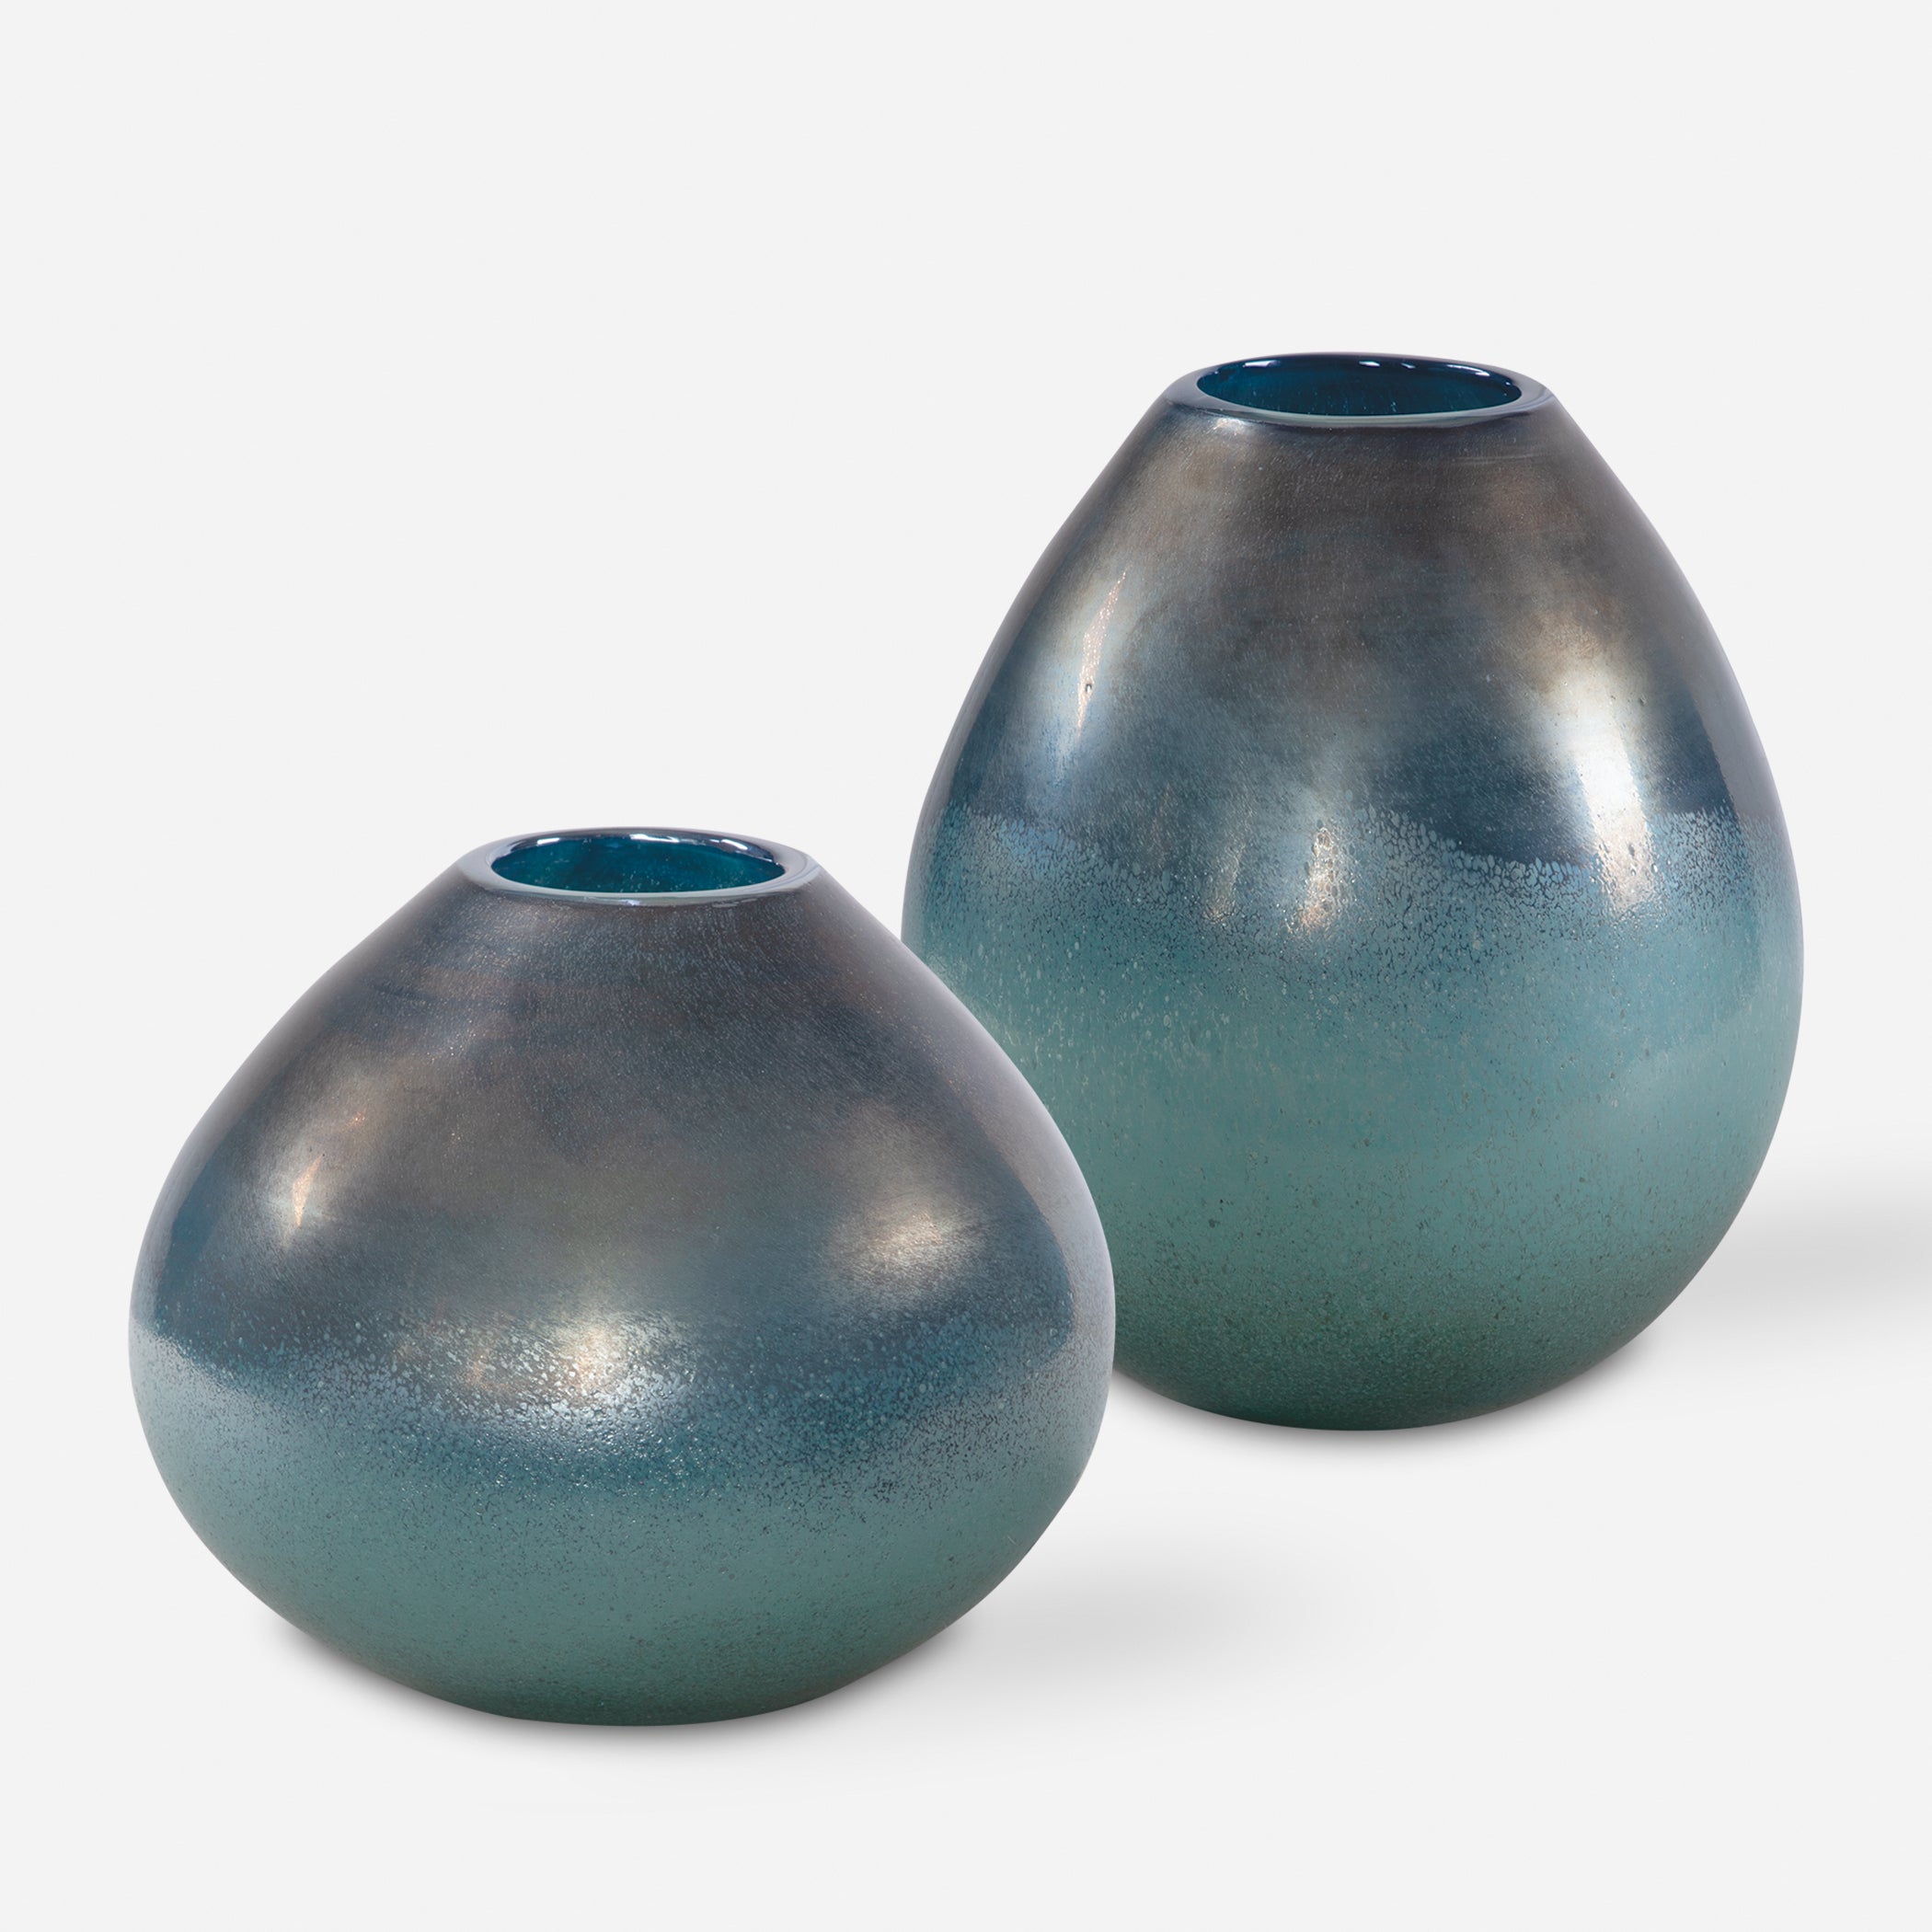 Uttermost Rian Vases Urns & Finials Vases Urns & Finials Uttermost   